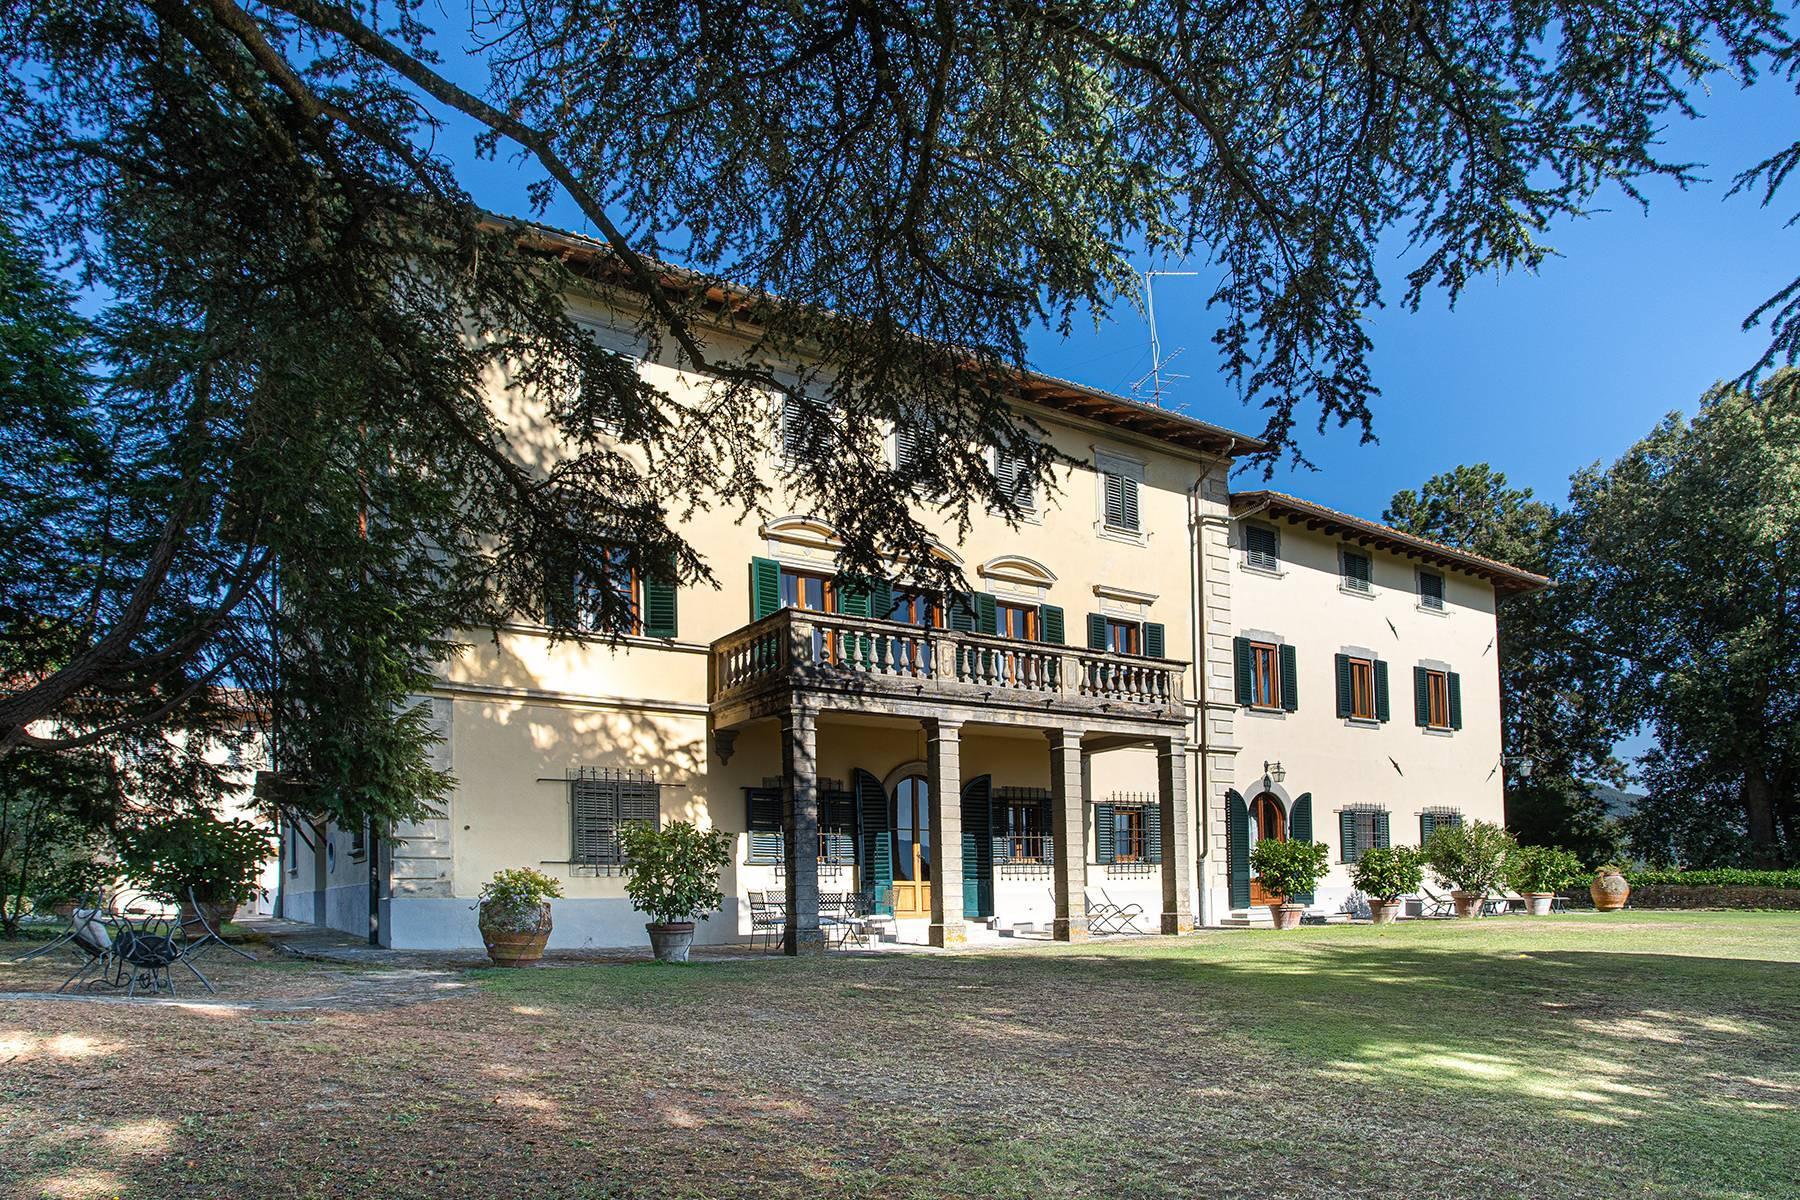 Historic villa in the Mugello valley - 1